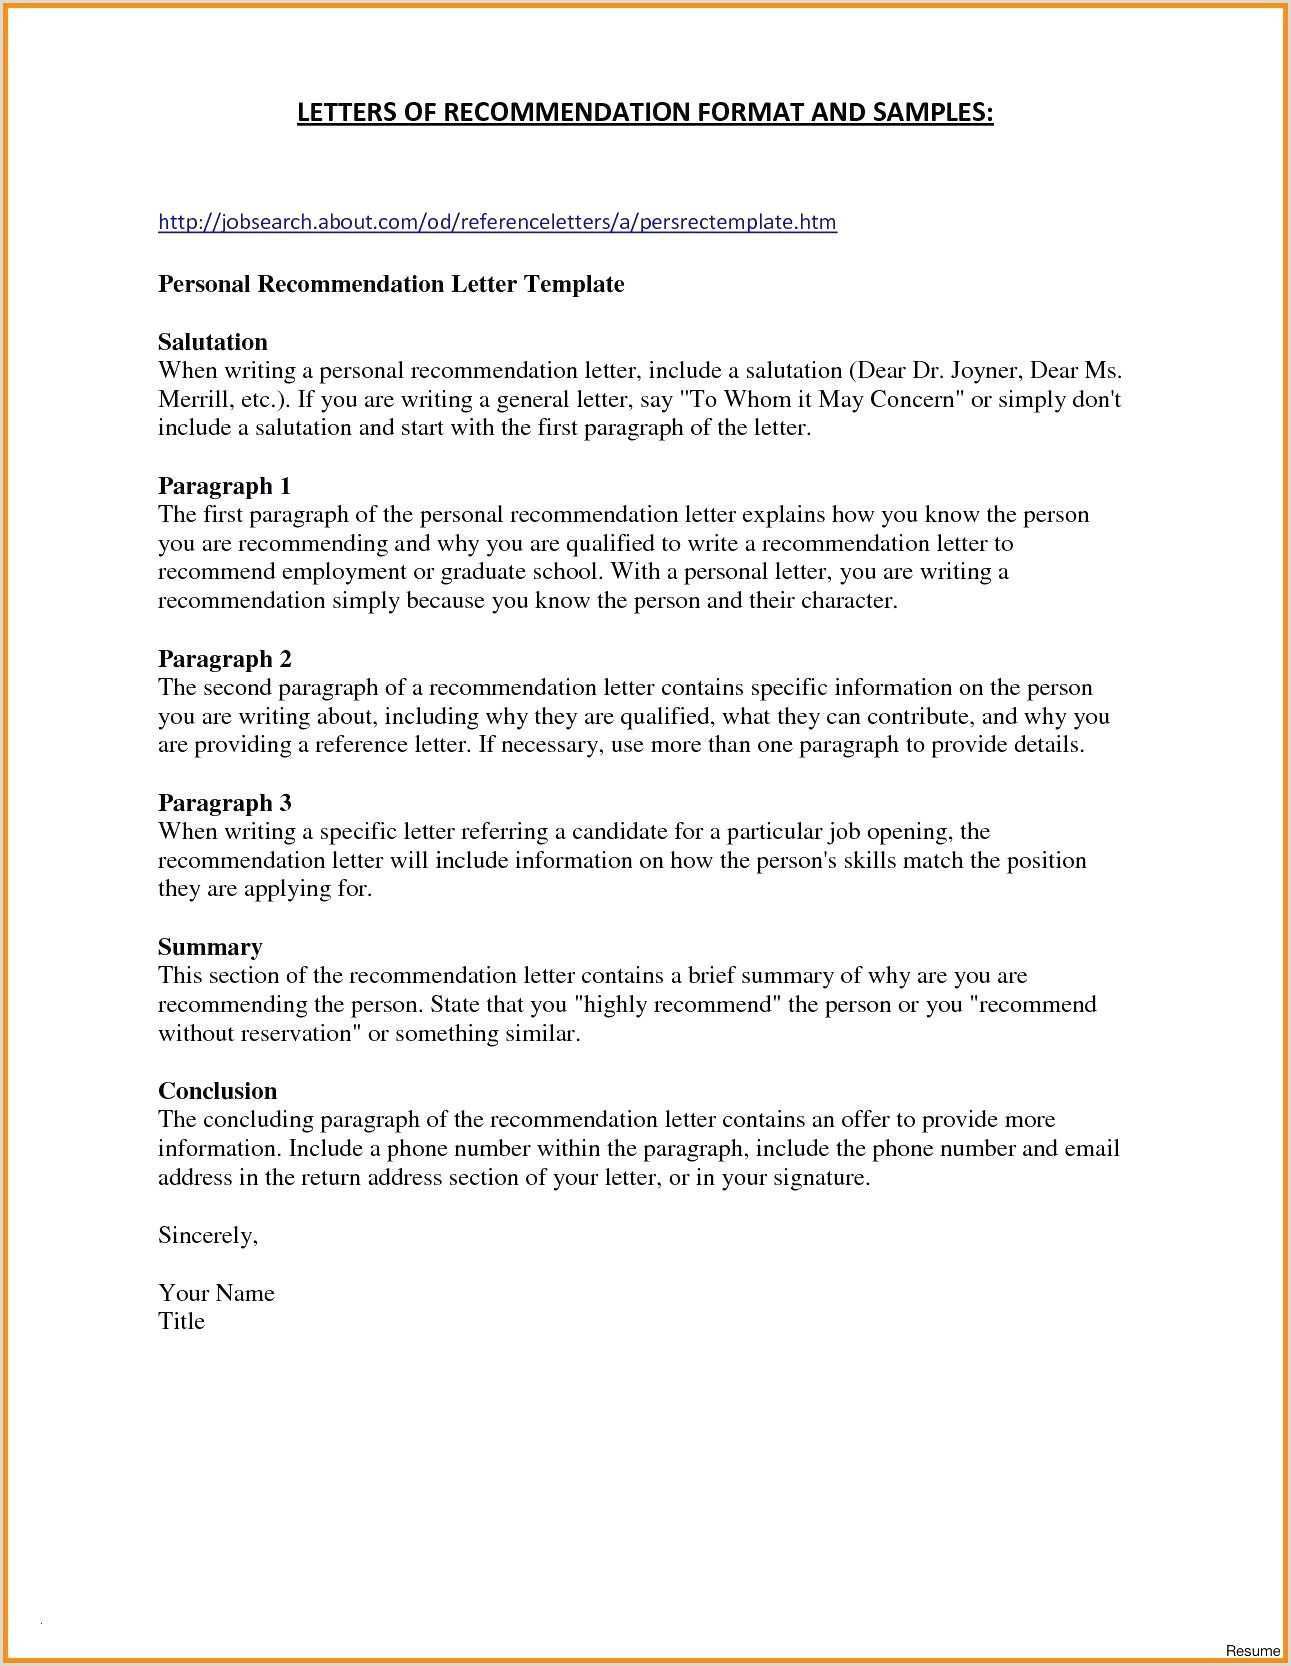 Lebenslauf Muster Reinigungskraft Lebenslauf Muster Reinigungskraft Lebenslauf Muster Reinigungskraft Stellenb Cover Letter For Resume Job Application Cover Letter Lettering